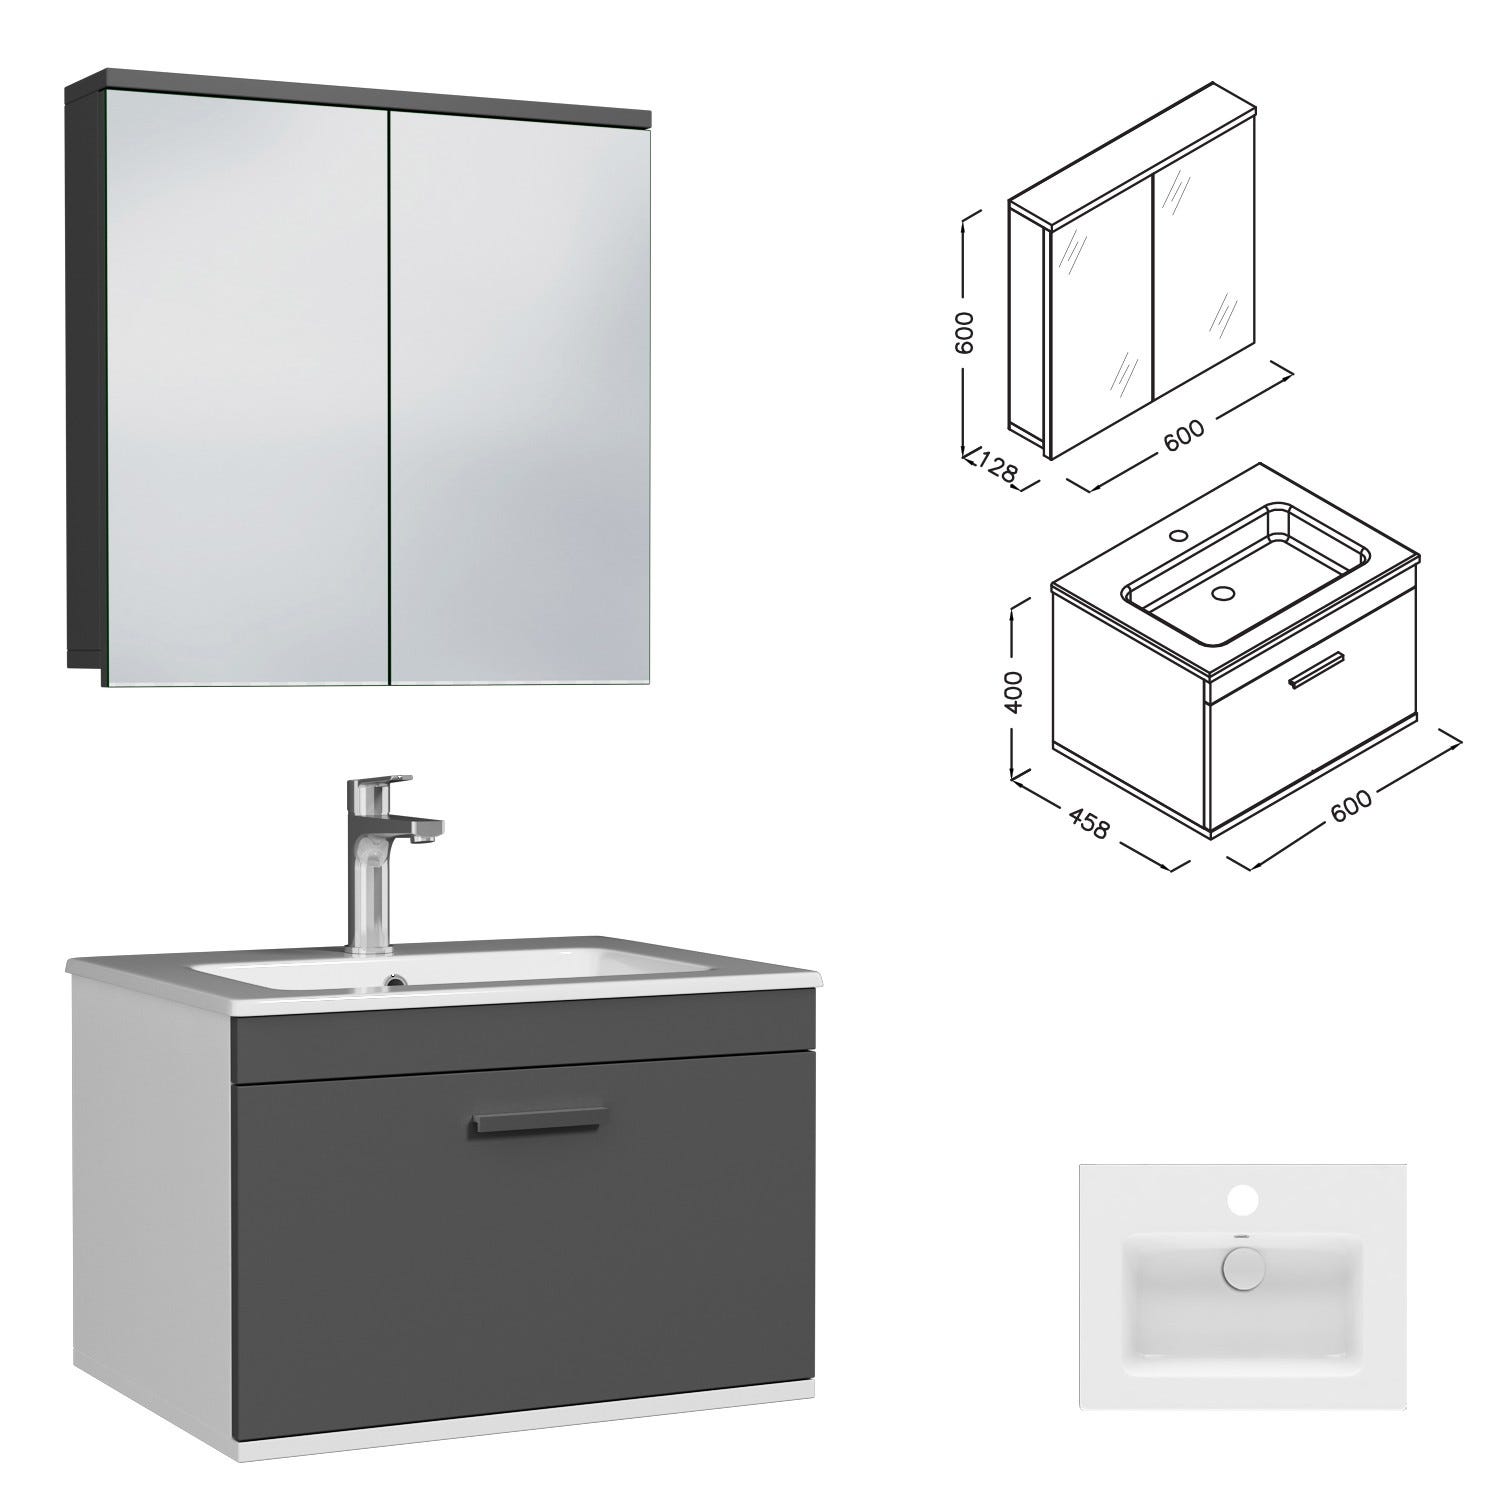 RUBITE Meuble salle de bain simple vasque 1 tiroir gris anthracite largeur 60 cm + miroir armoire 2